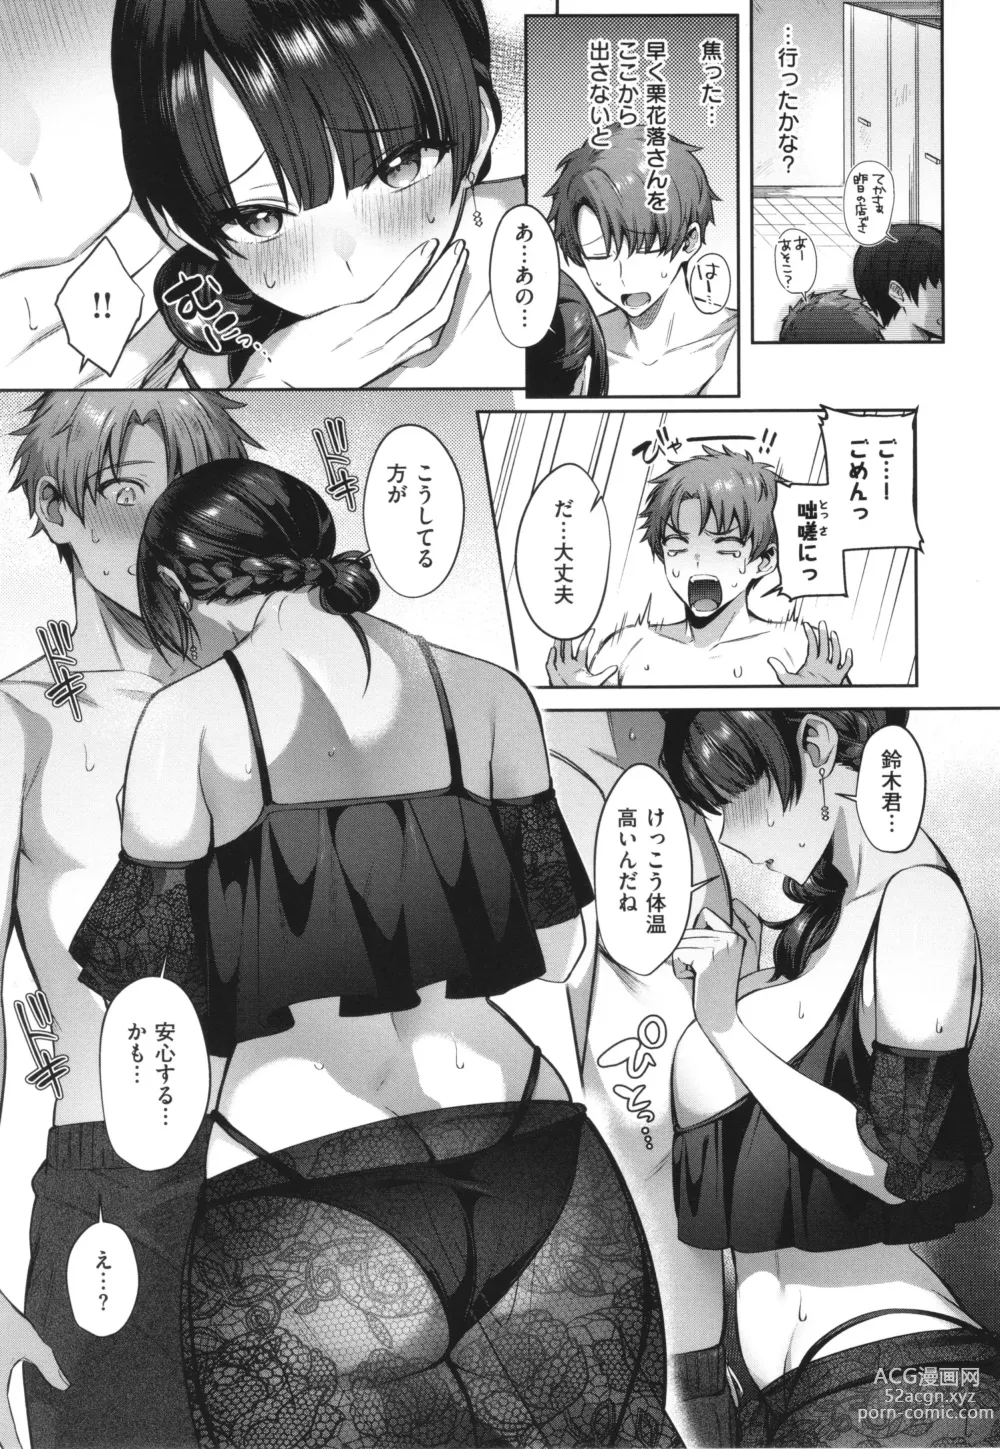 Page 13 of manga Tsubomi Zakari